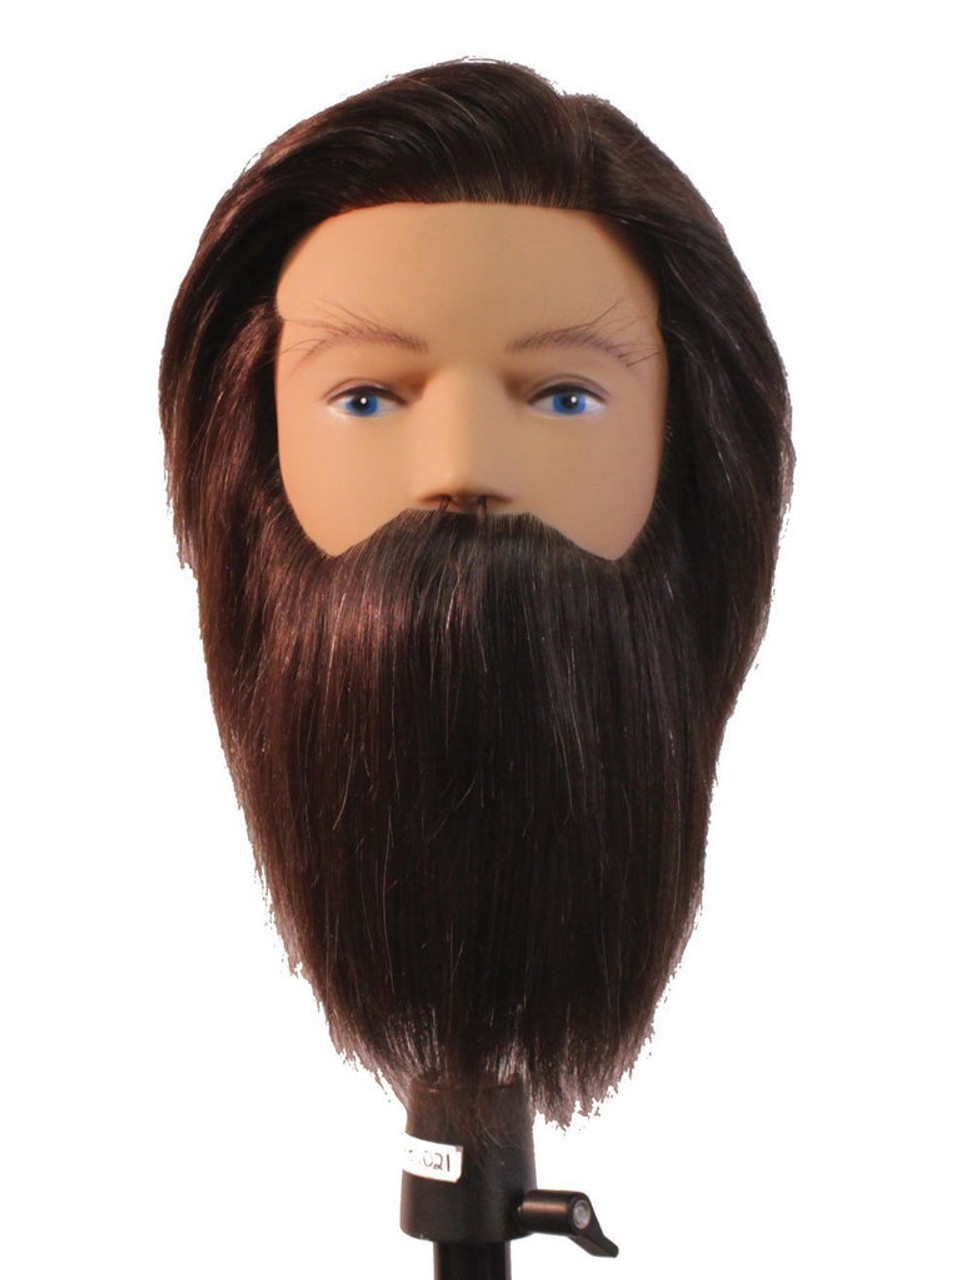 Mannequin Head Peter - 100% Human Hair - My Salon Express Barber